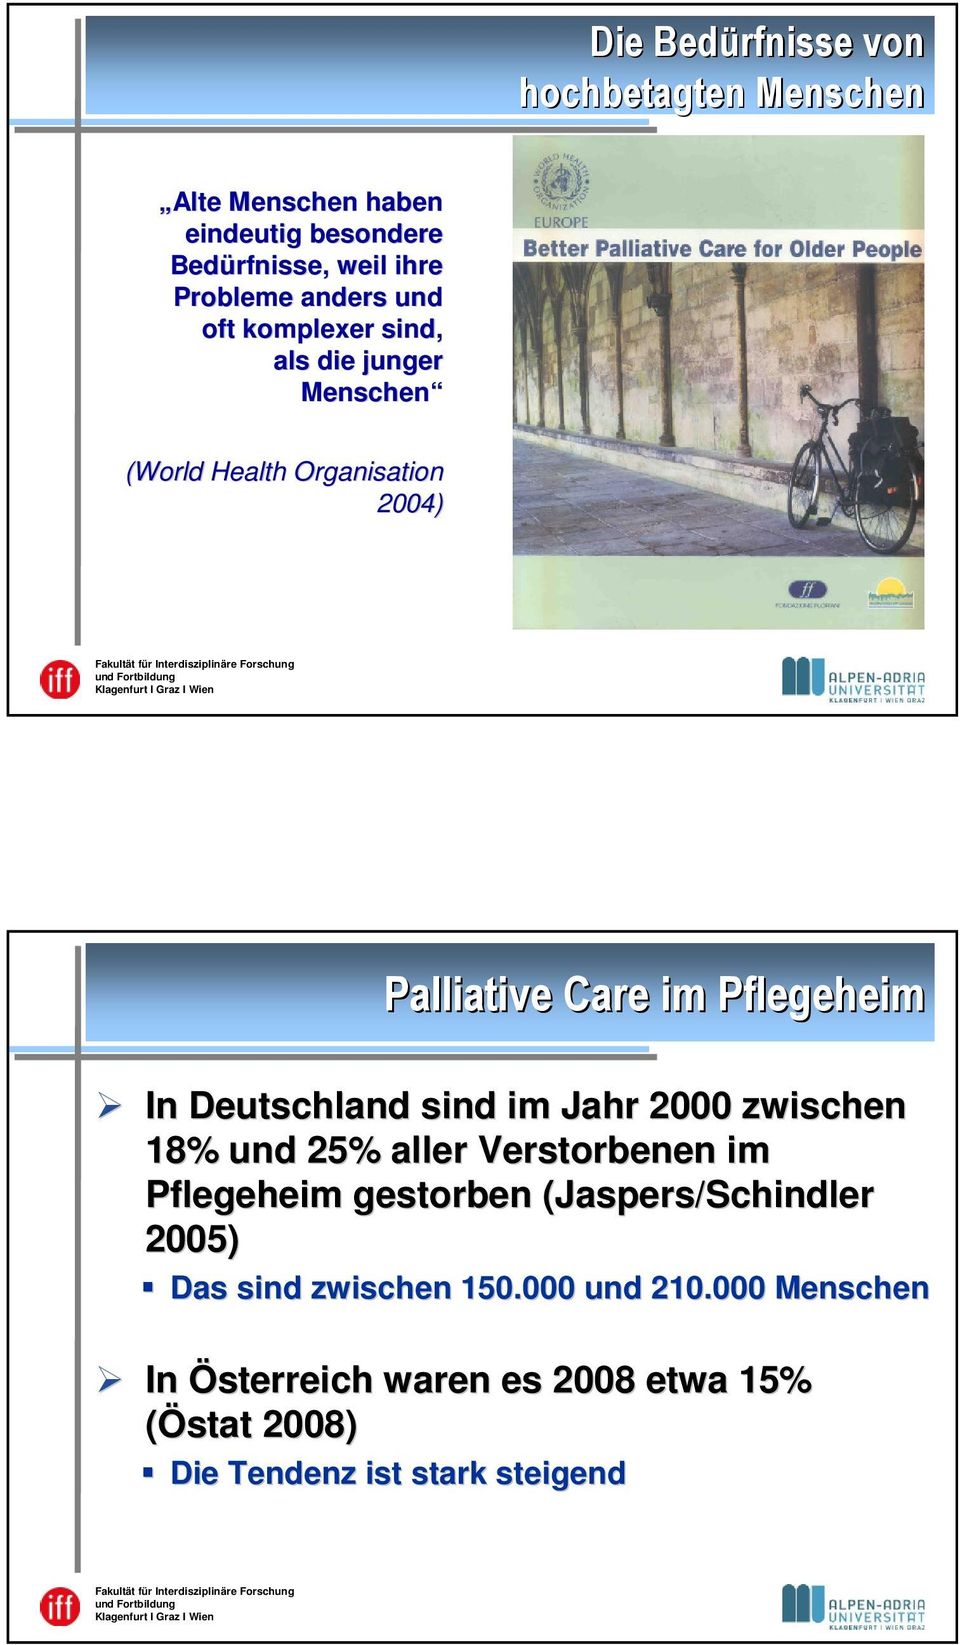 Deutschland sind im Jahr 2000 zwischen 18% und 25% aller Verstorbenen im Pflegeheim gestorben (Jaspers/Schindler 2005)